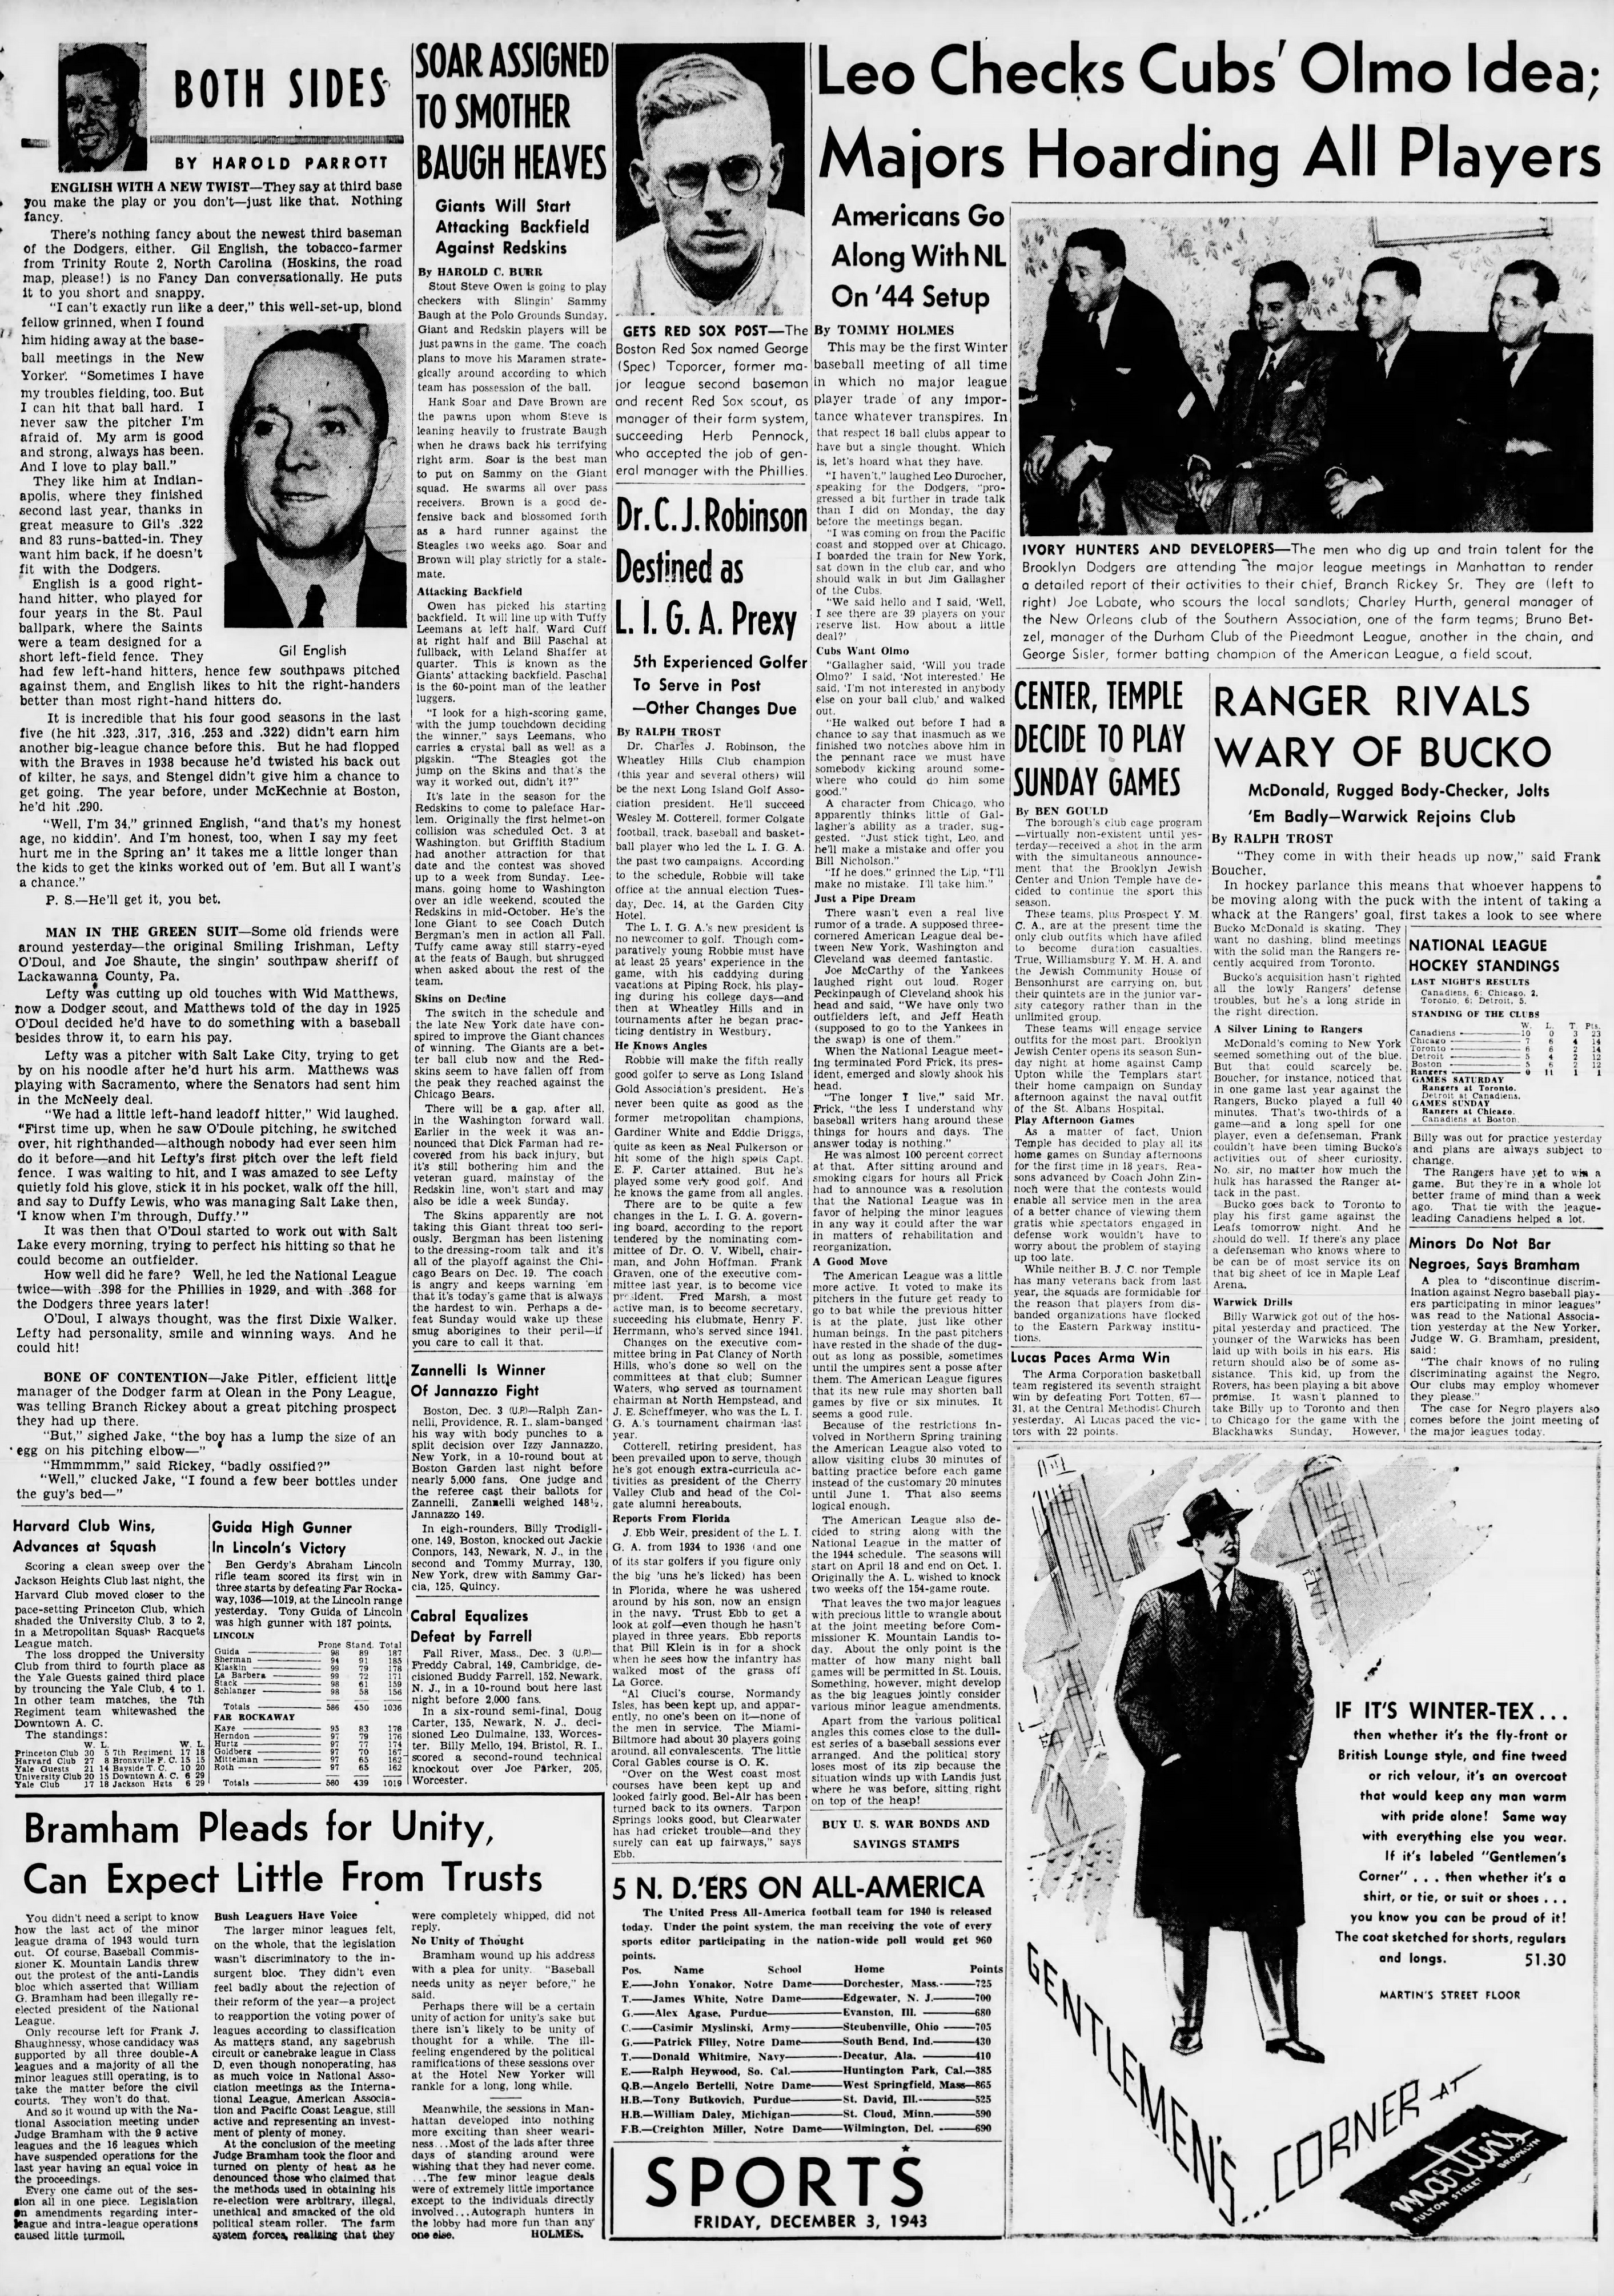 The_Brooklyn_Daily_Eagle_Fri__Dec_3__1943_(4).jpg